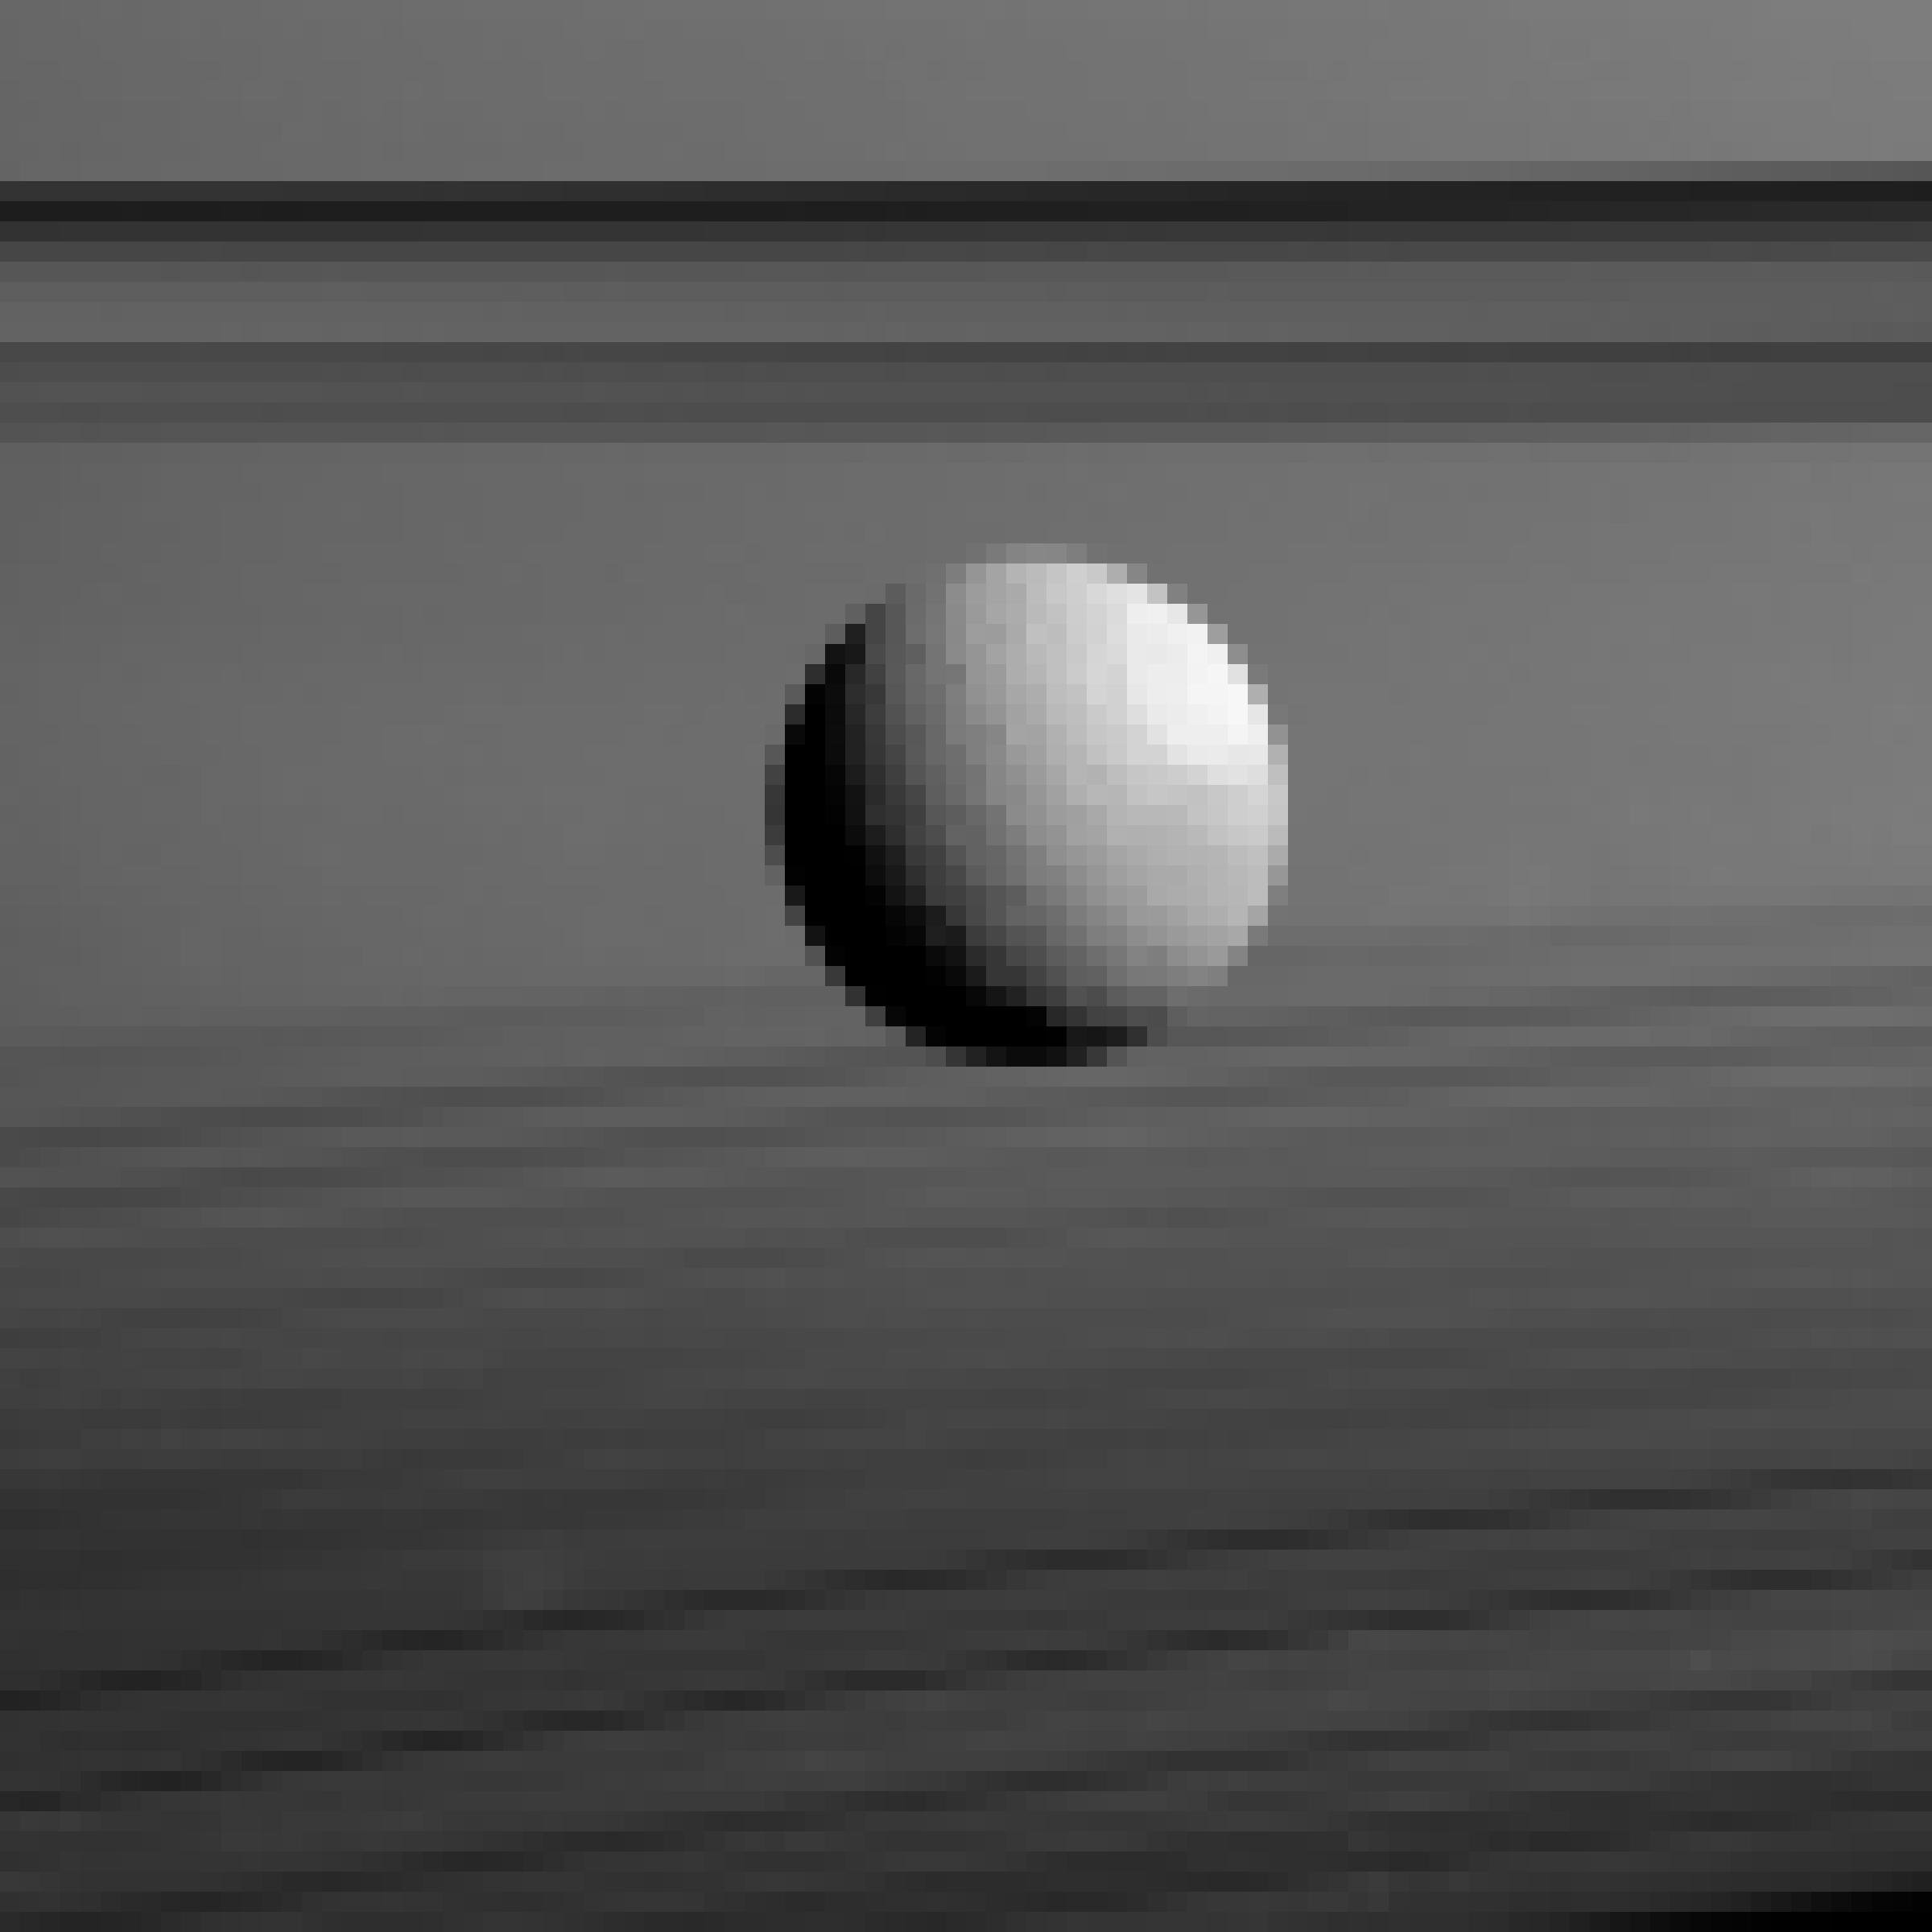 Der Saturnmond Tethys is mit leichten Kratern übersät.